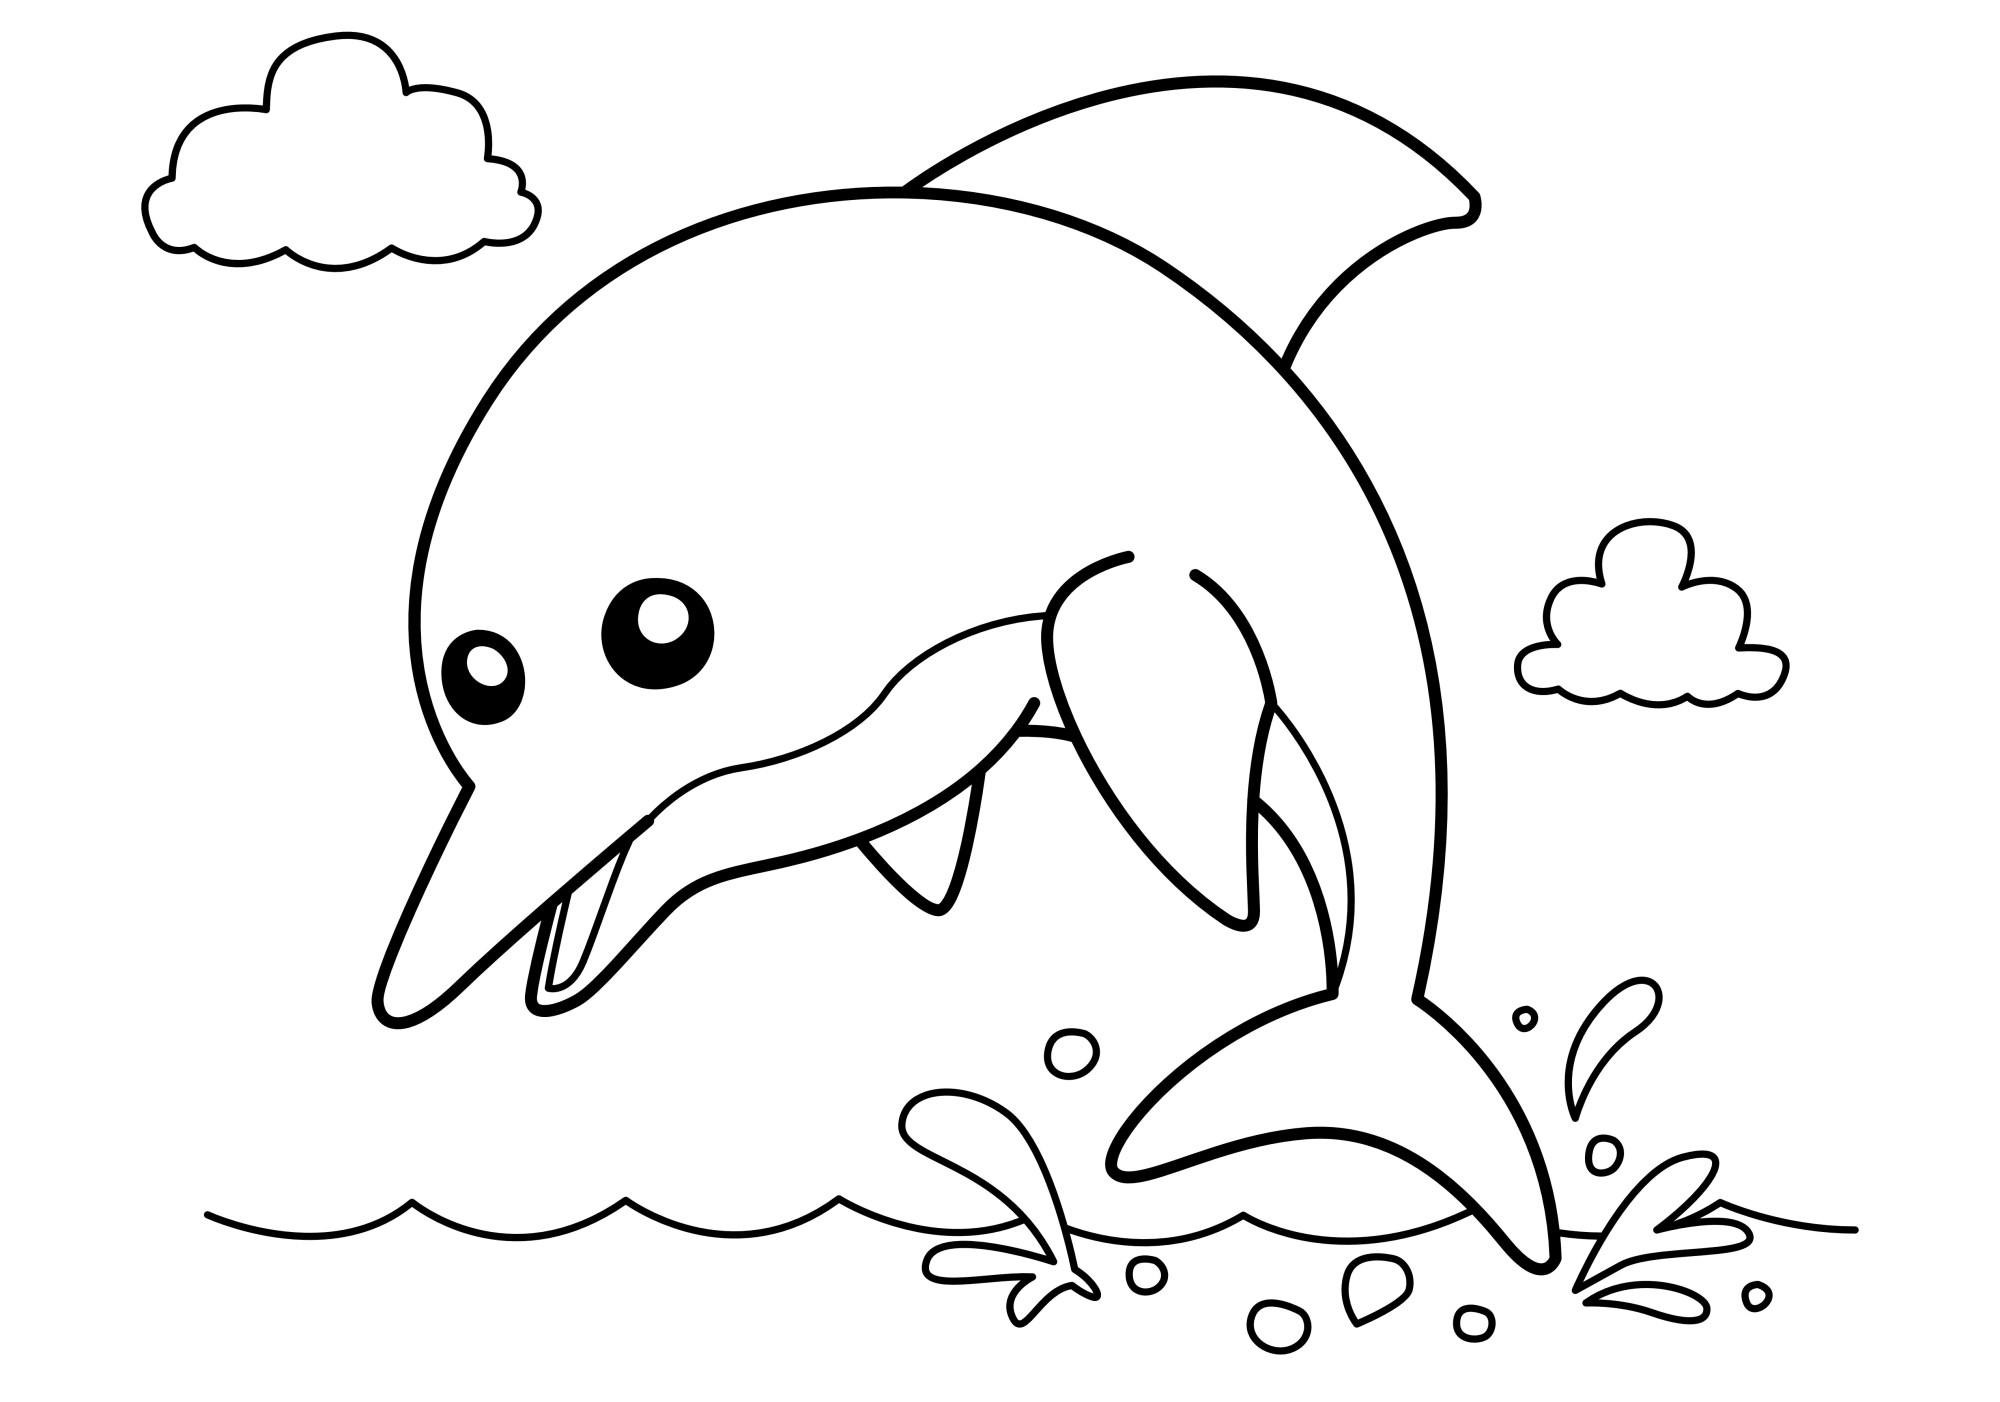 Раскраска для детей: милый дельфин на фоне неба